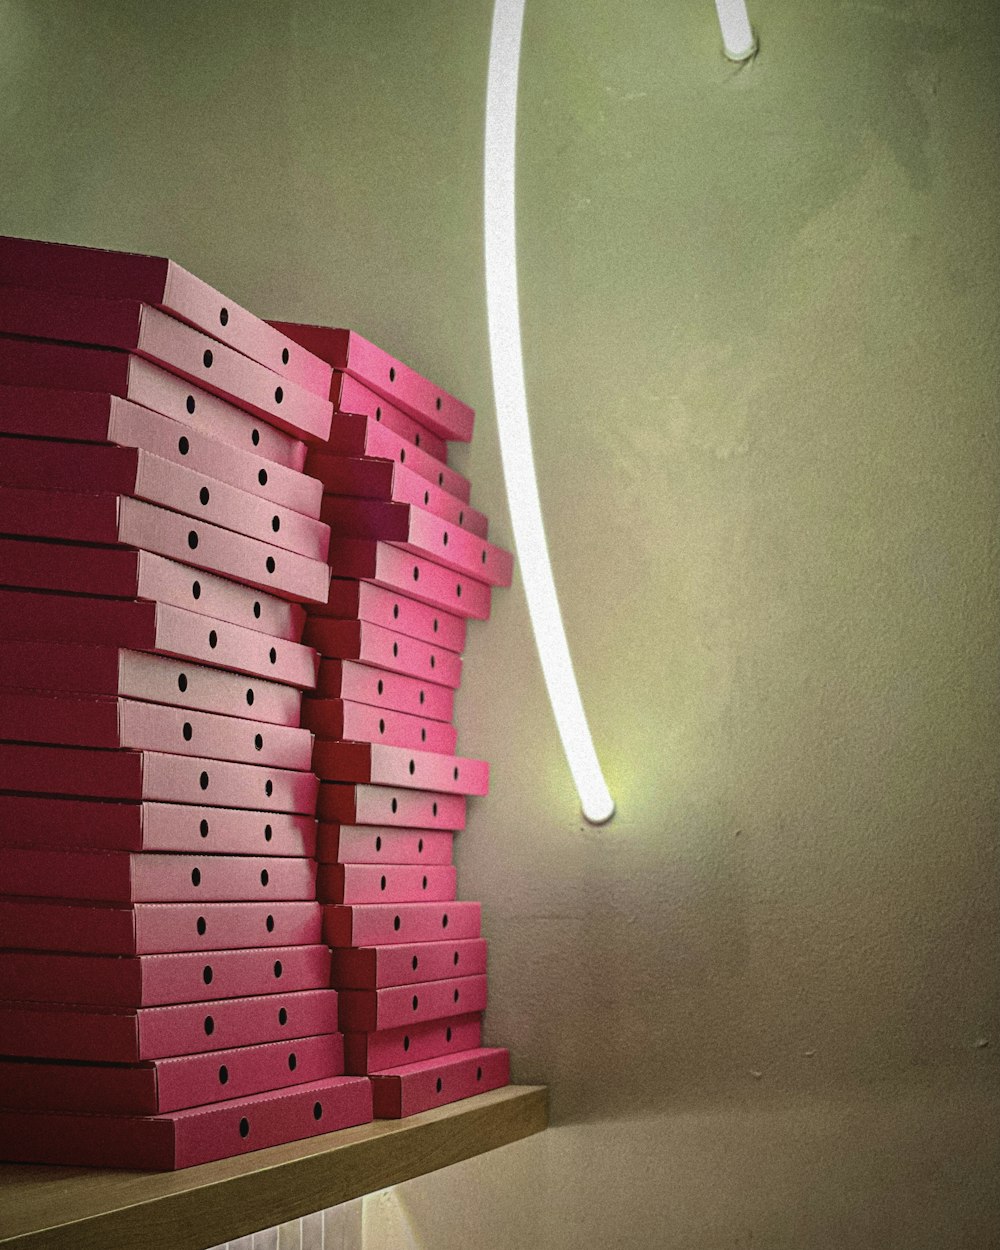 Una pila de cajas rosadas encima de un estante de madera